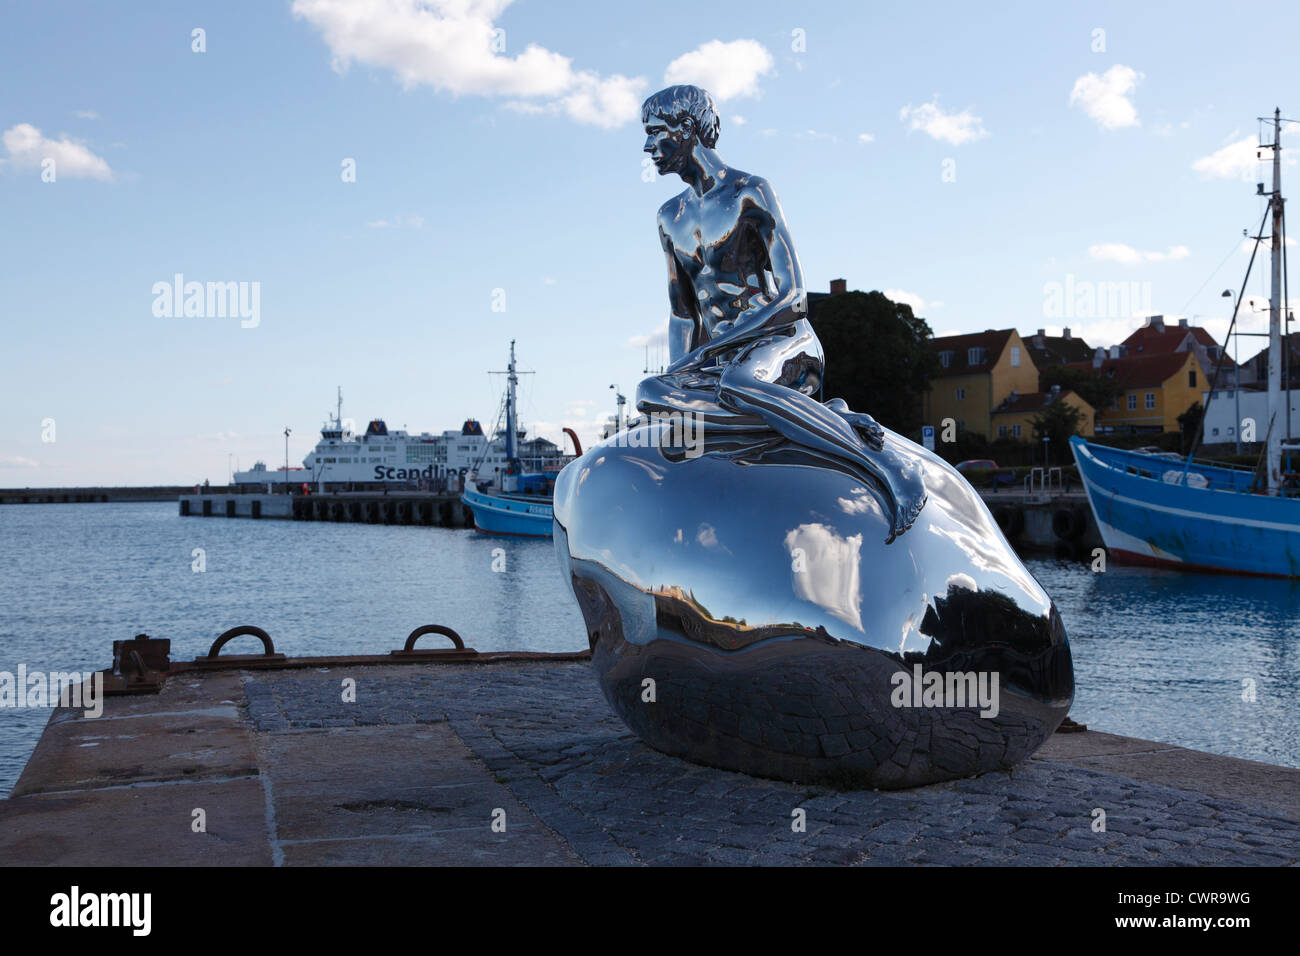 Han- oder er in englischer Sprache - eine 2m hohe Skulptur in Helsingør, der kleine Wassermann - das Äquivalent zu der kleinen Meerjungfrau in Kopenhagen Stockfoto